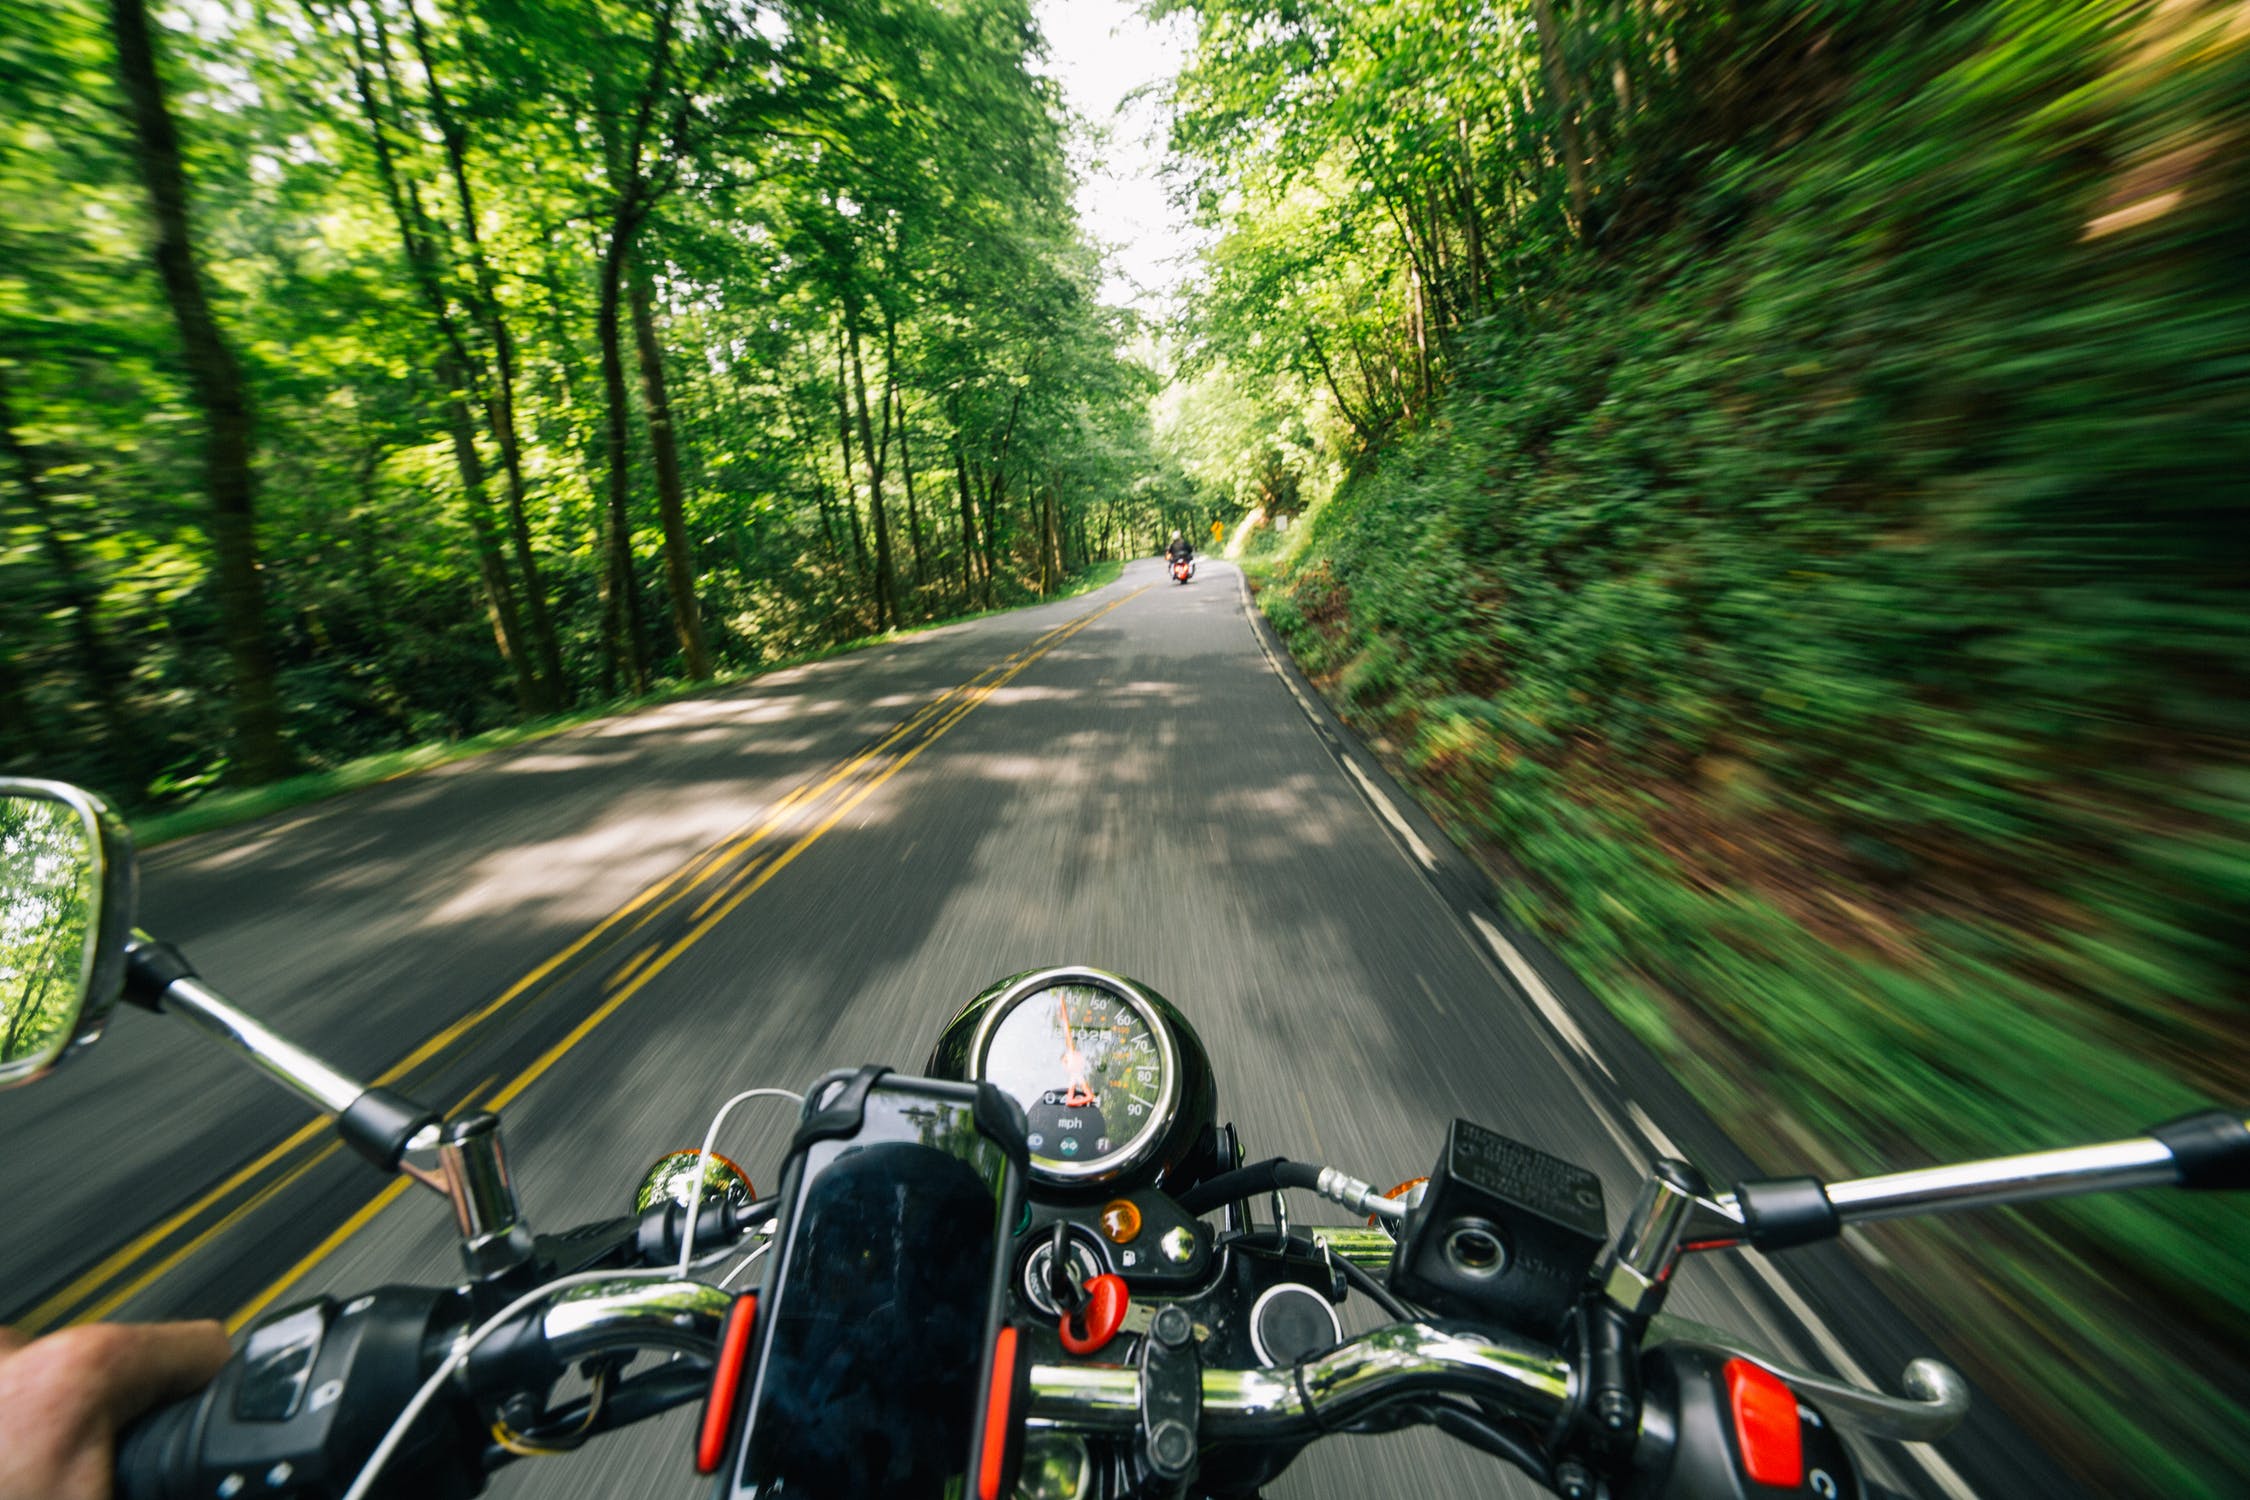 Motociclista conduciendo por una carretera rodeada de vegetación. | Imagen: Pexels